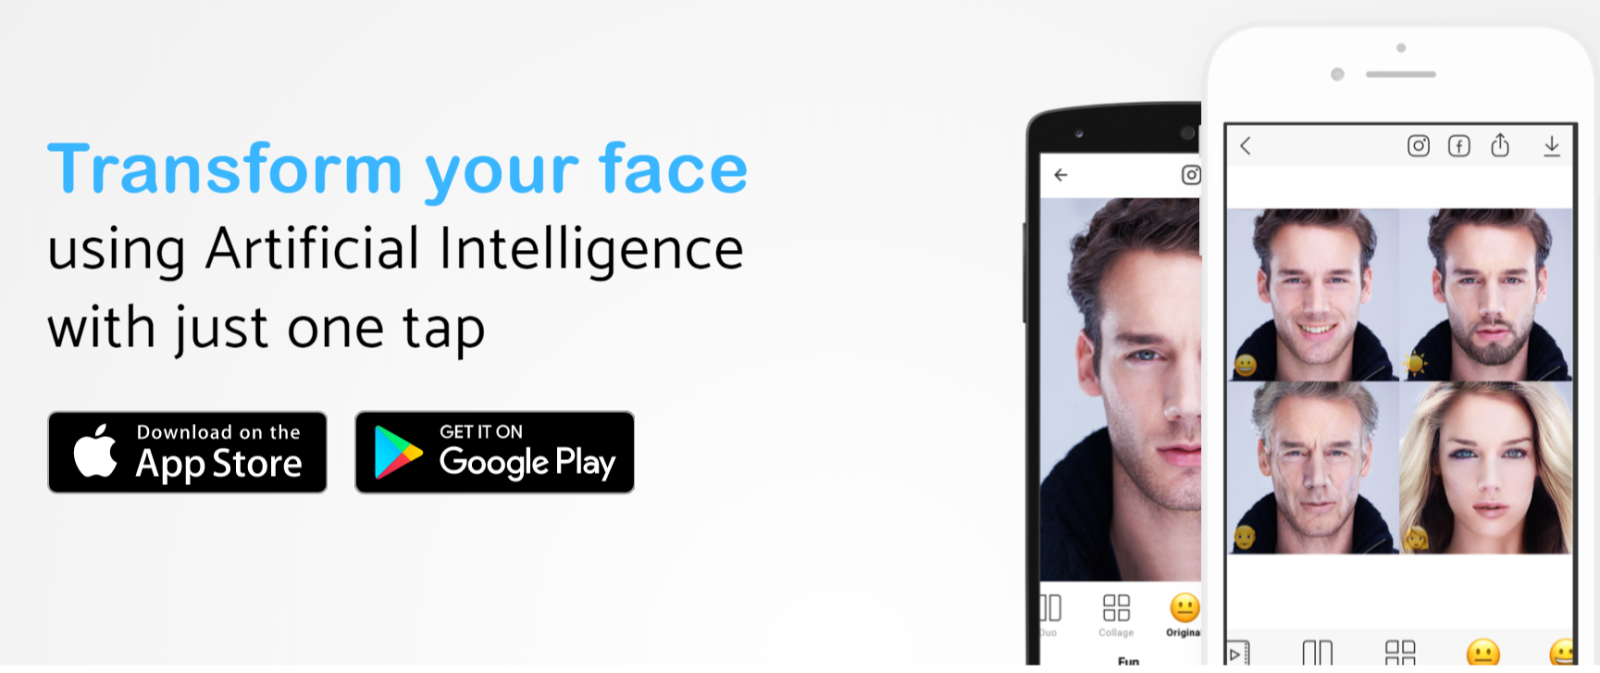 Người dùng nên cẩn thận khi sử dụng app chỉnh sửa khuôn mặt do mật khẩu khuôn mặt đang được sử dụng phổ biến trên điện thoại hiện nay. Ảnh minh họa